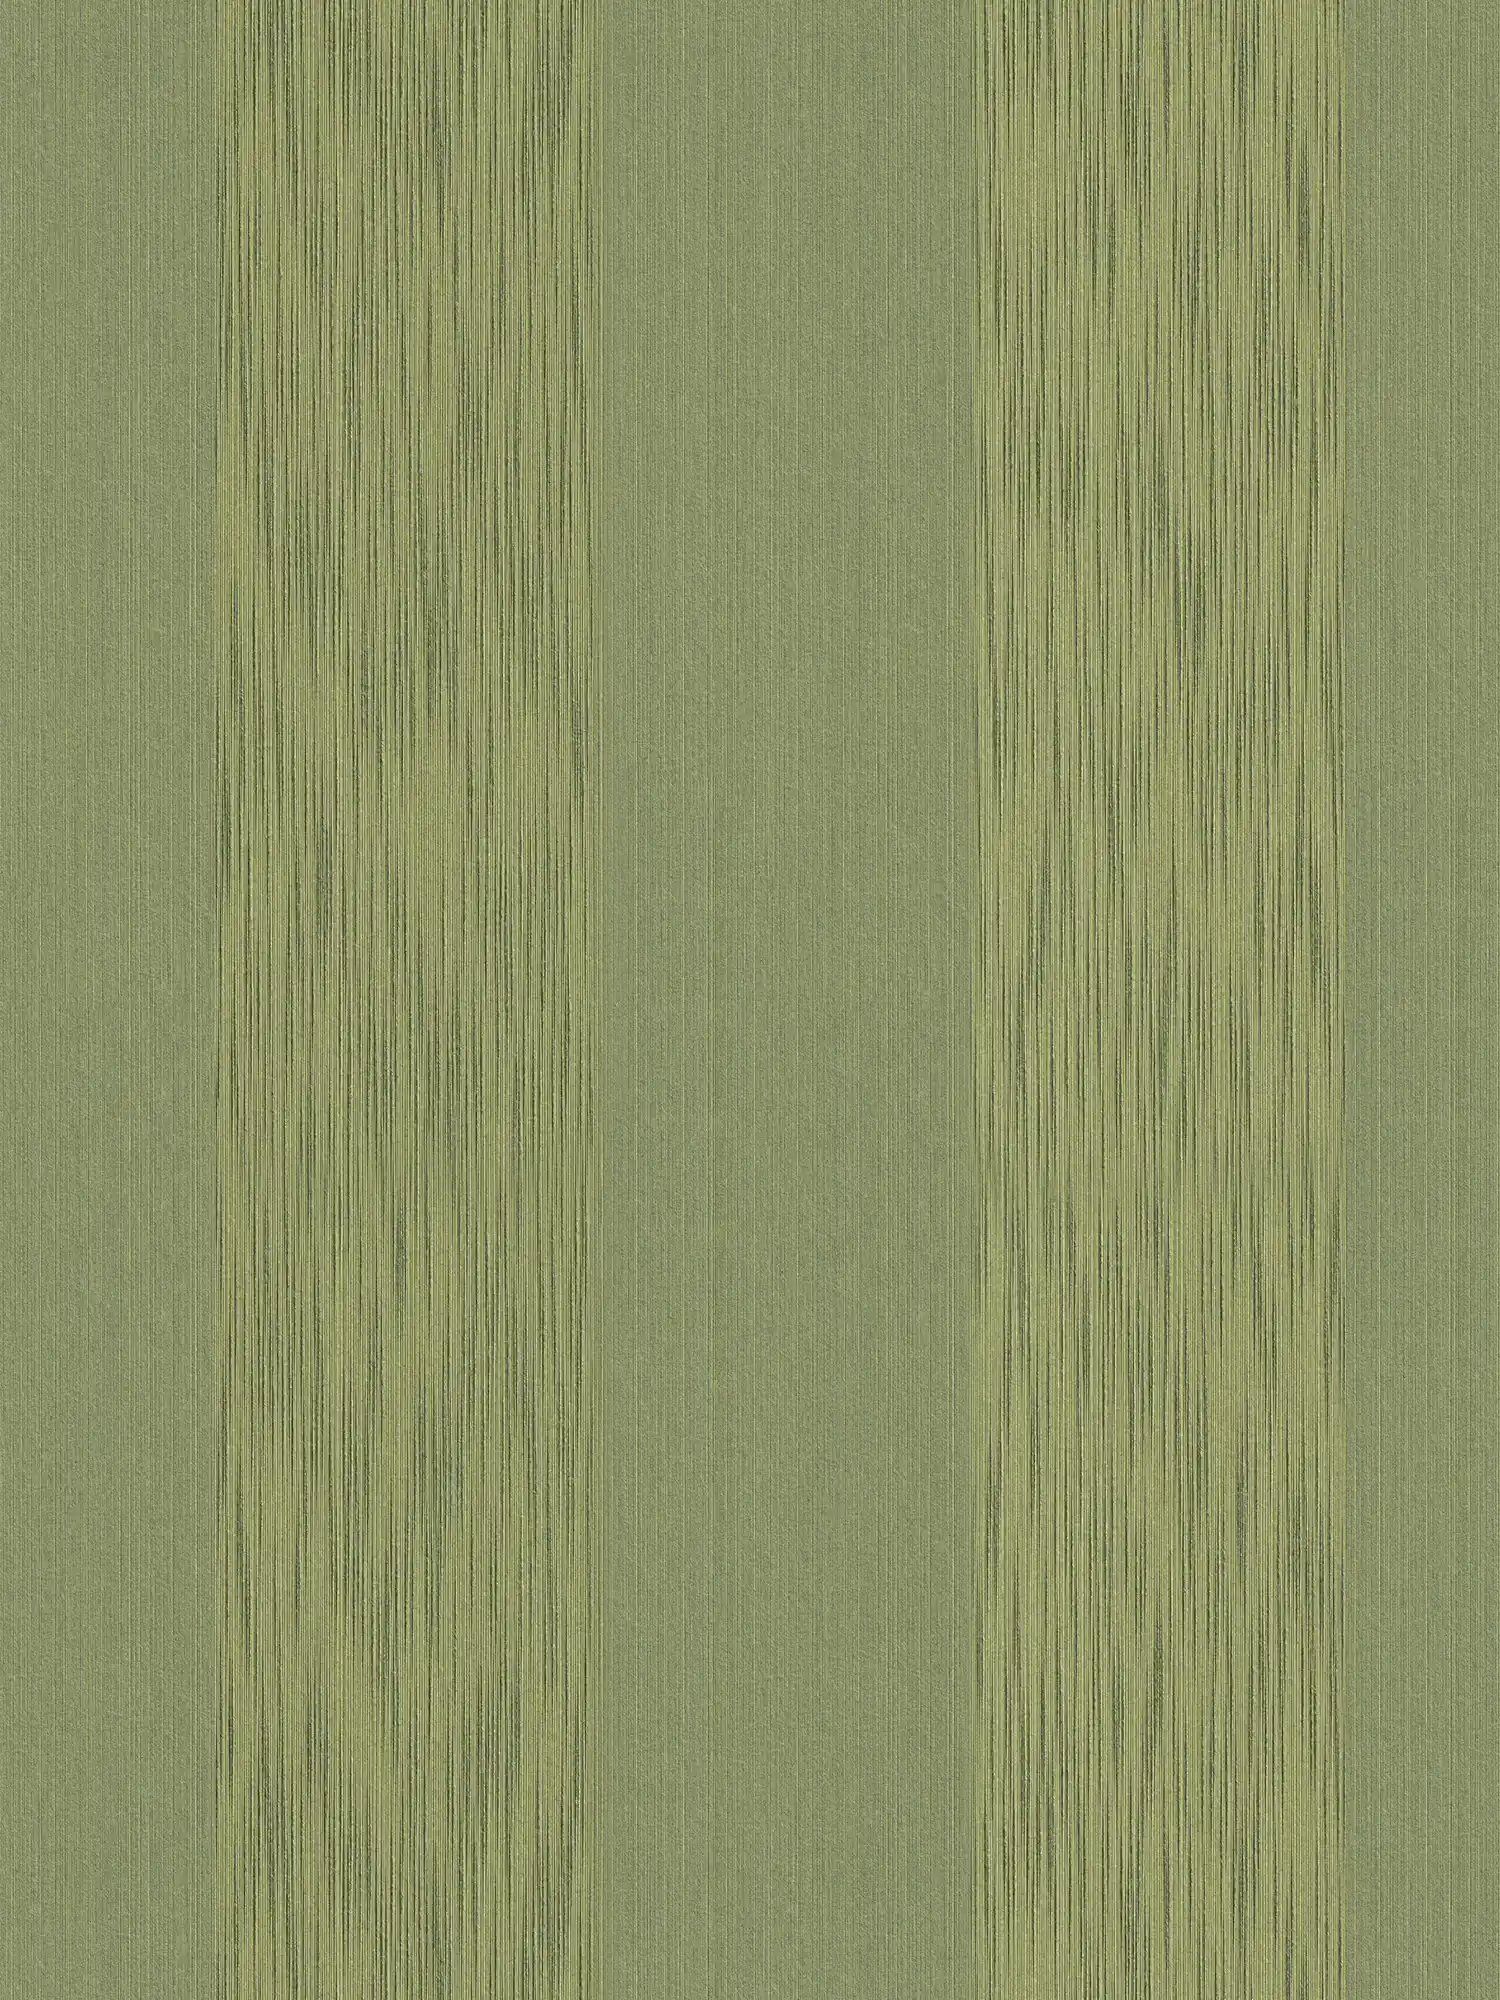 Structuurbehang met metallic effect & streeppatroon - groen
